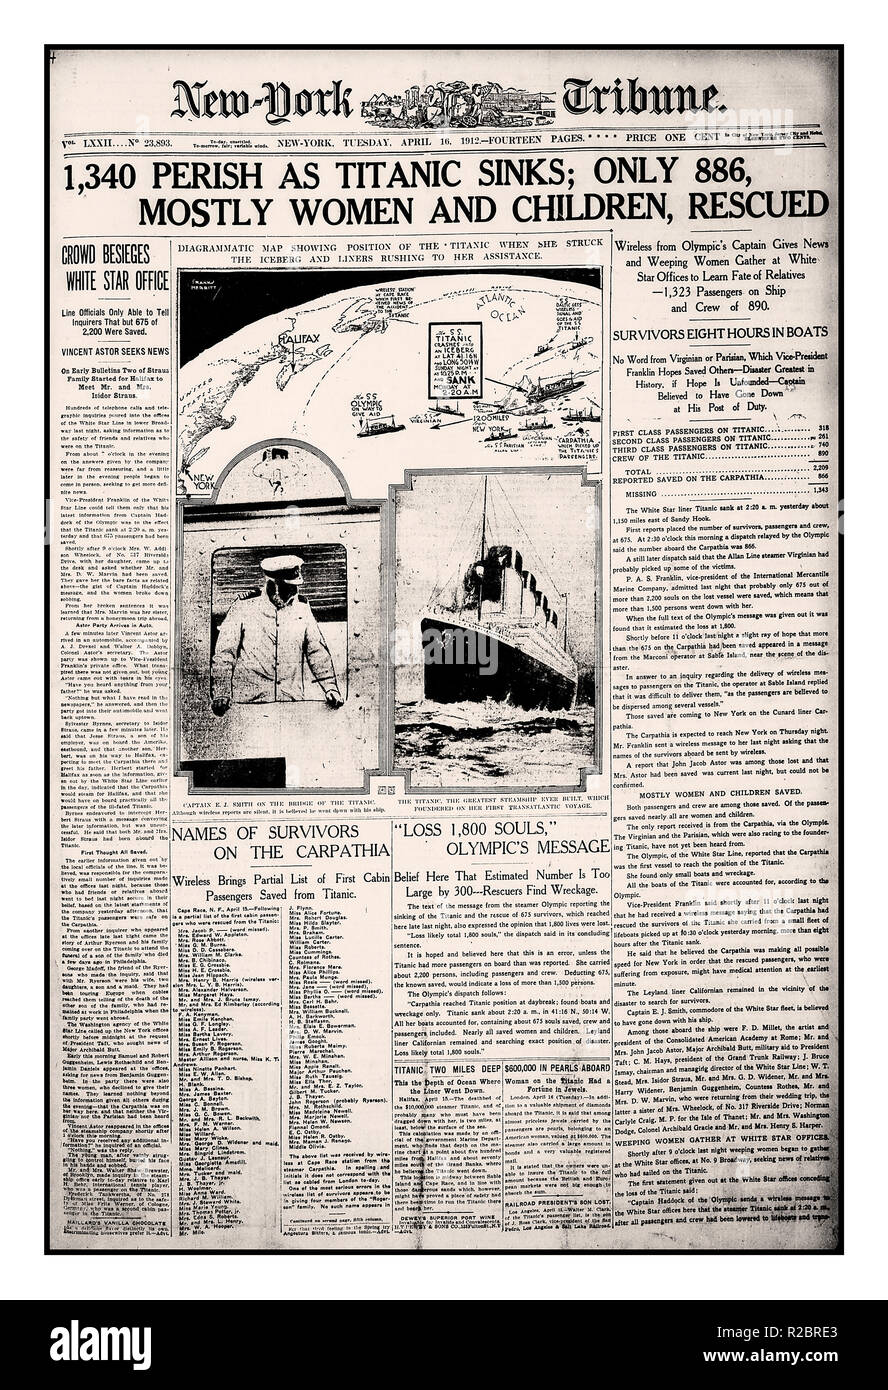 Naufragio del Titanic in primo piano News Giornale Vintage New York Tribune broadsheet notizia martedì 16 aprile 1912, il reporting sul tragico naufragio del RMS Titanic 15-16 aprile 1912, '1340 Perirete come Titanic affonda" Foto Stock